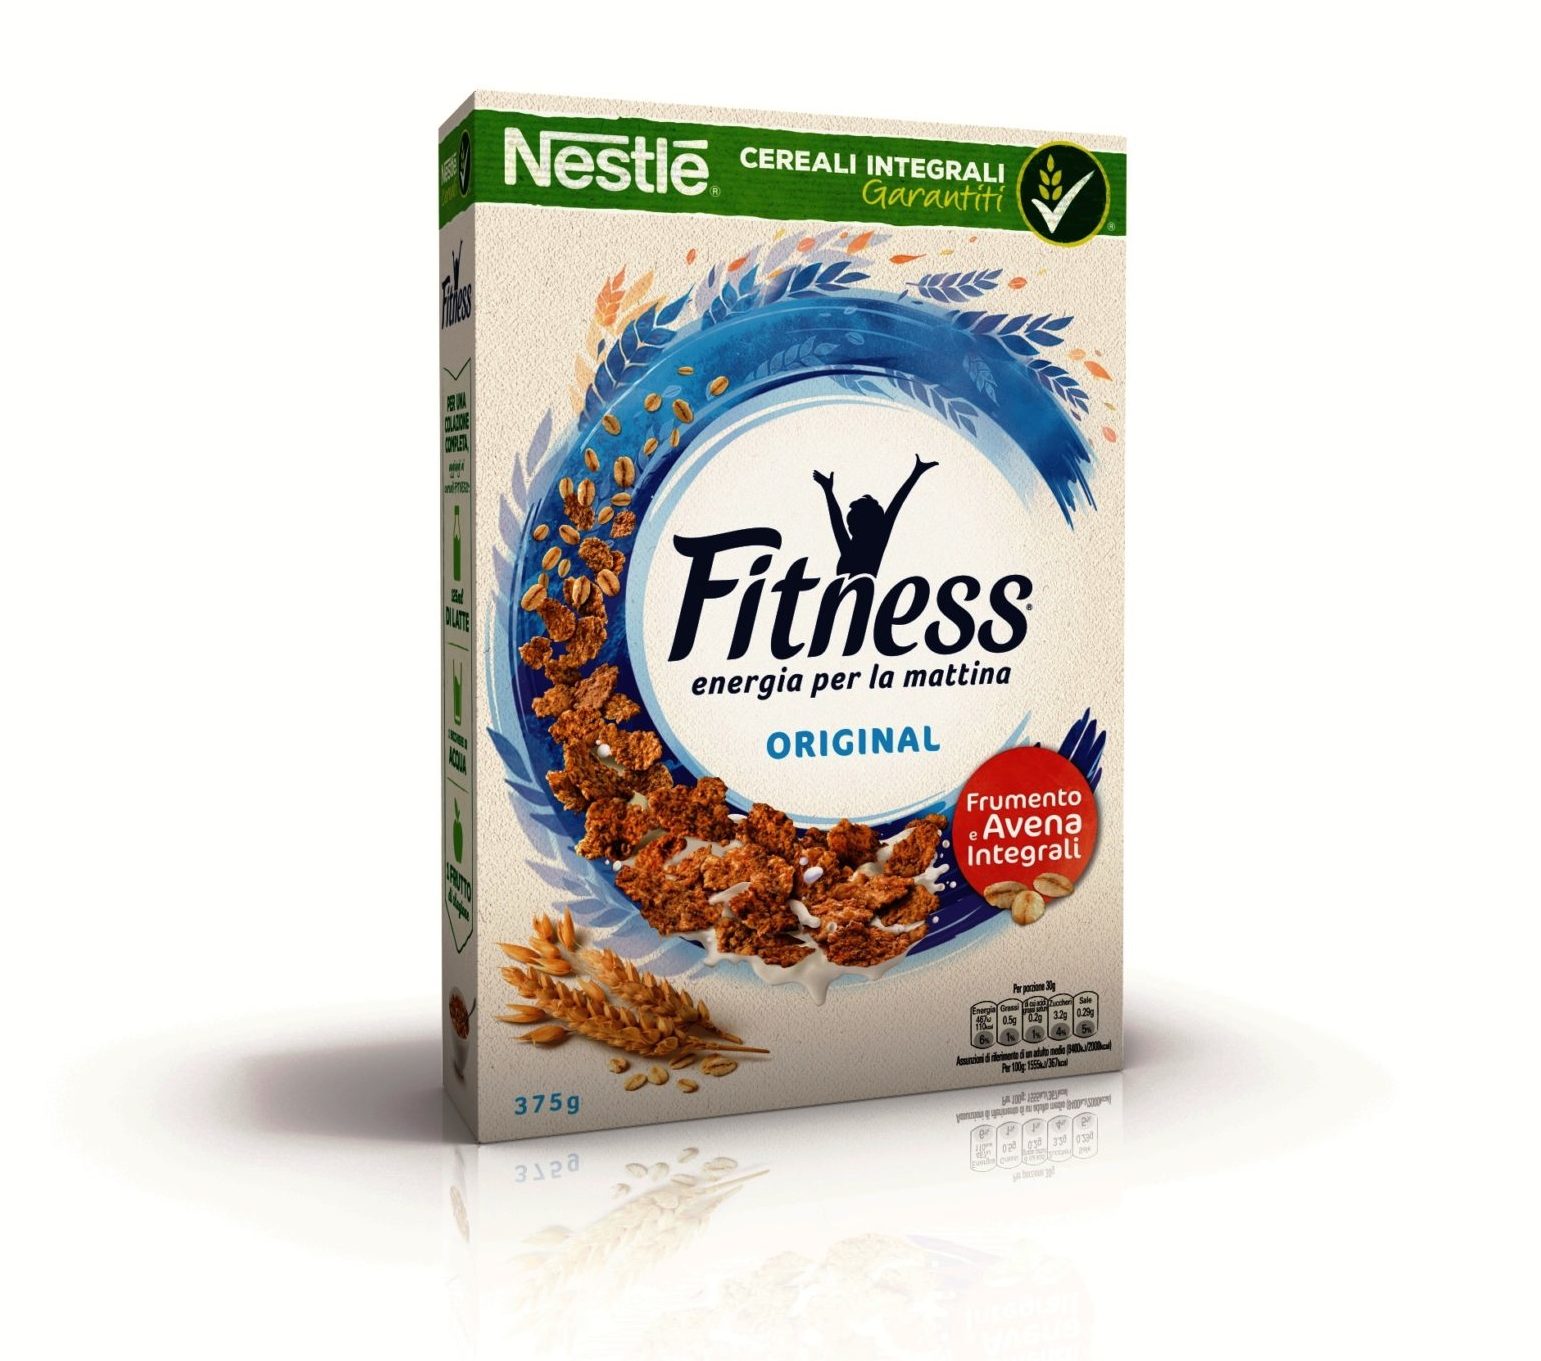 Original Nestlé Fitness